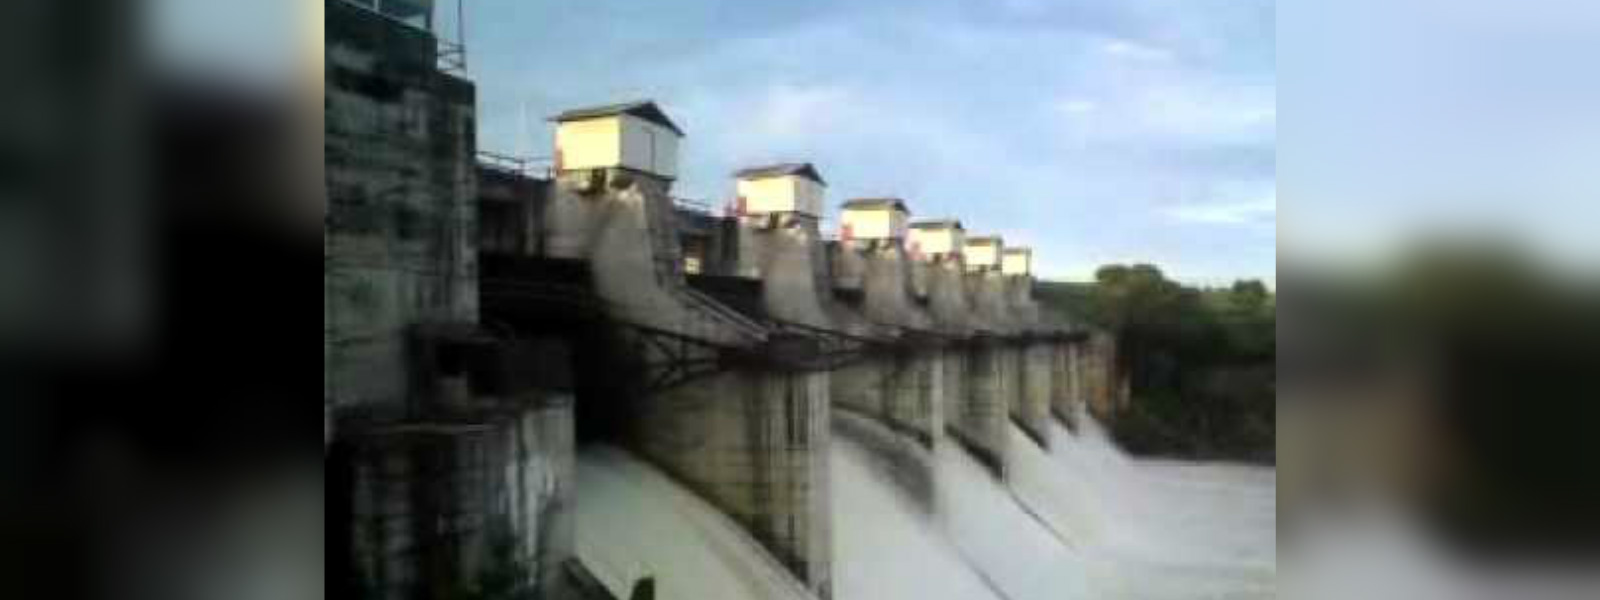 Six sluice gates of Lunugamvehera reservoir opened